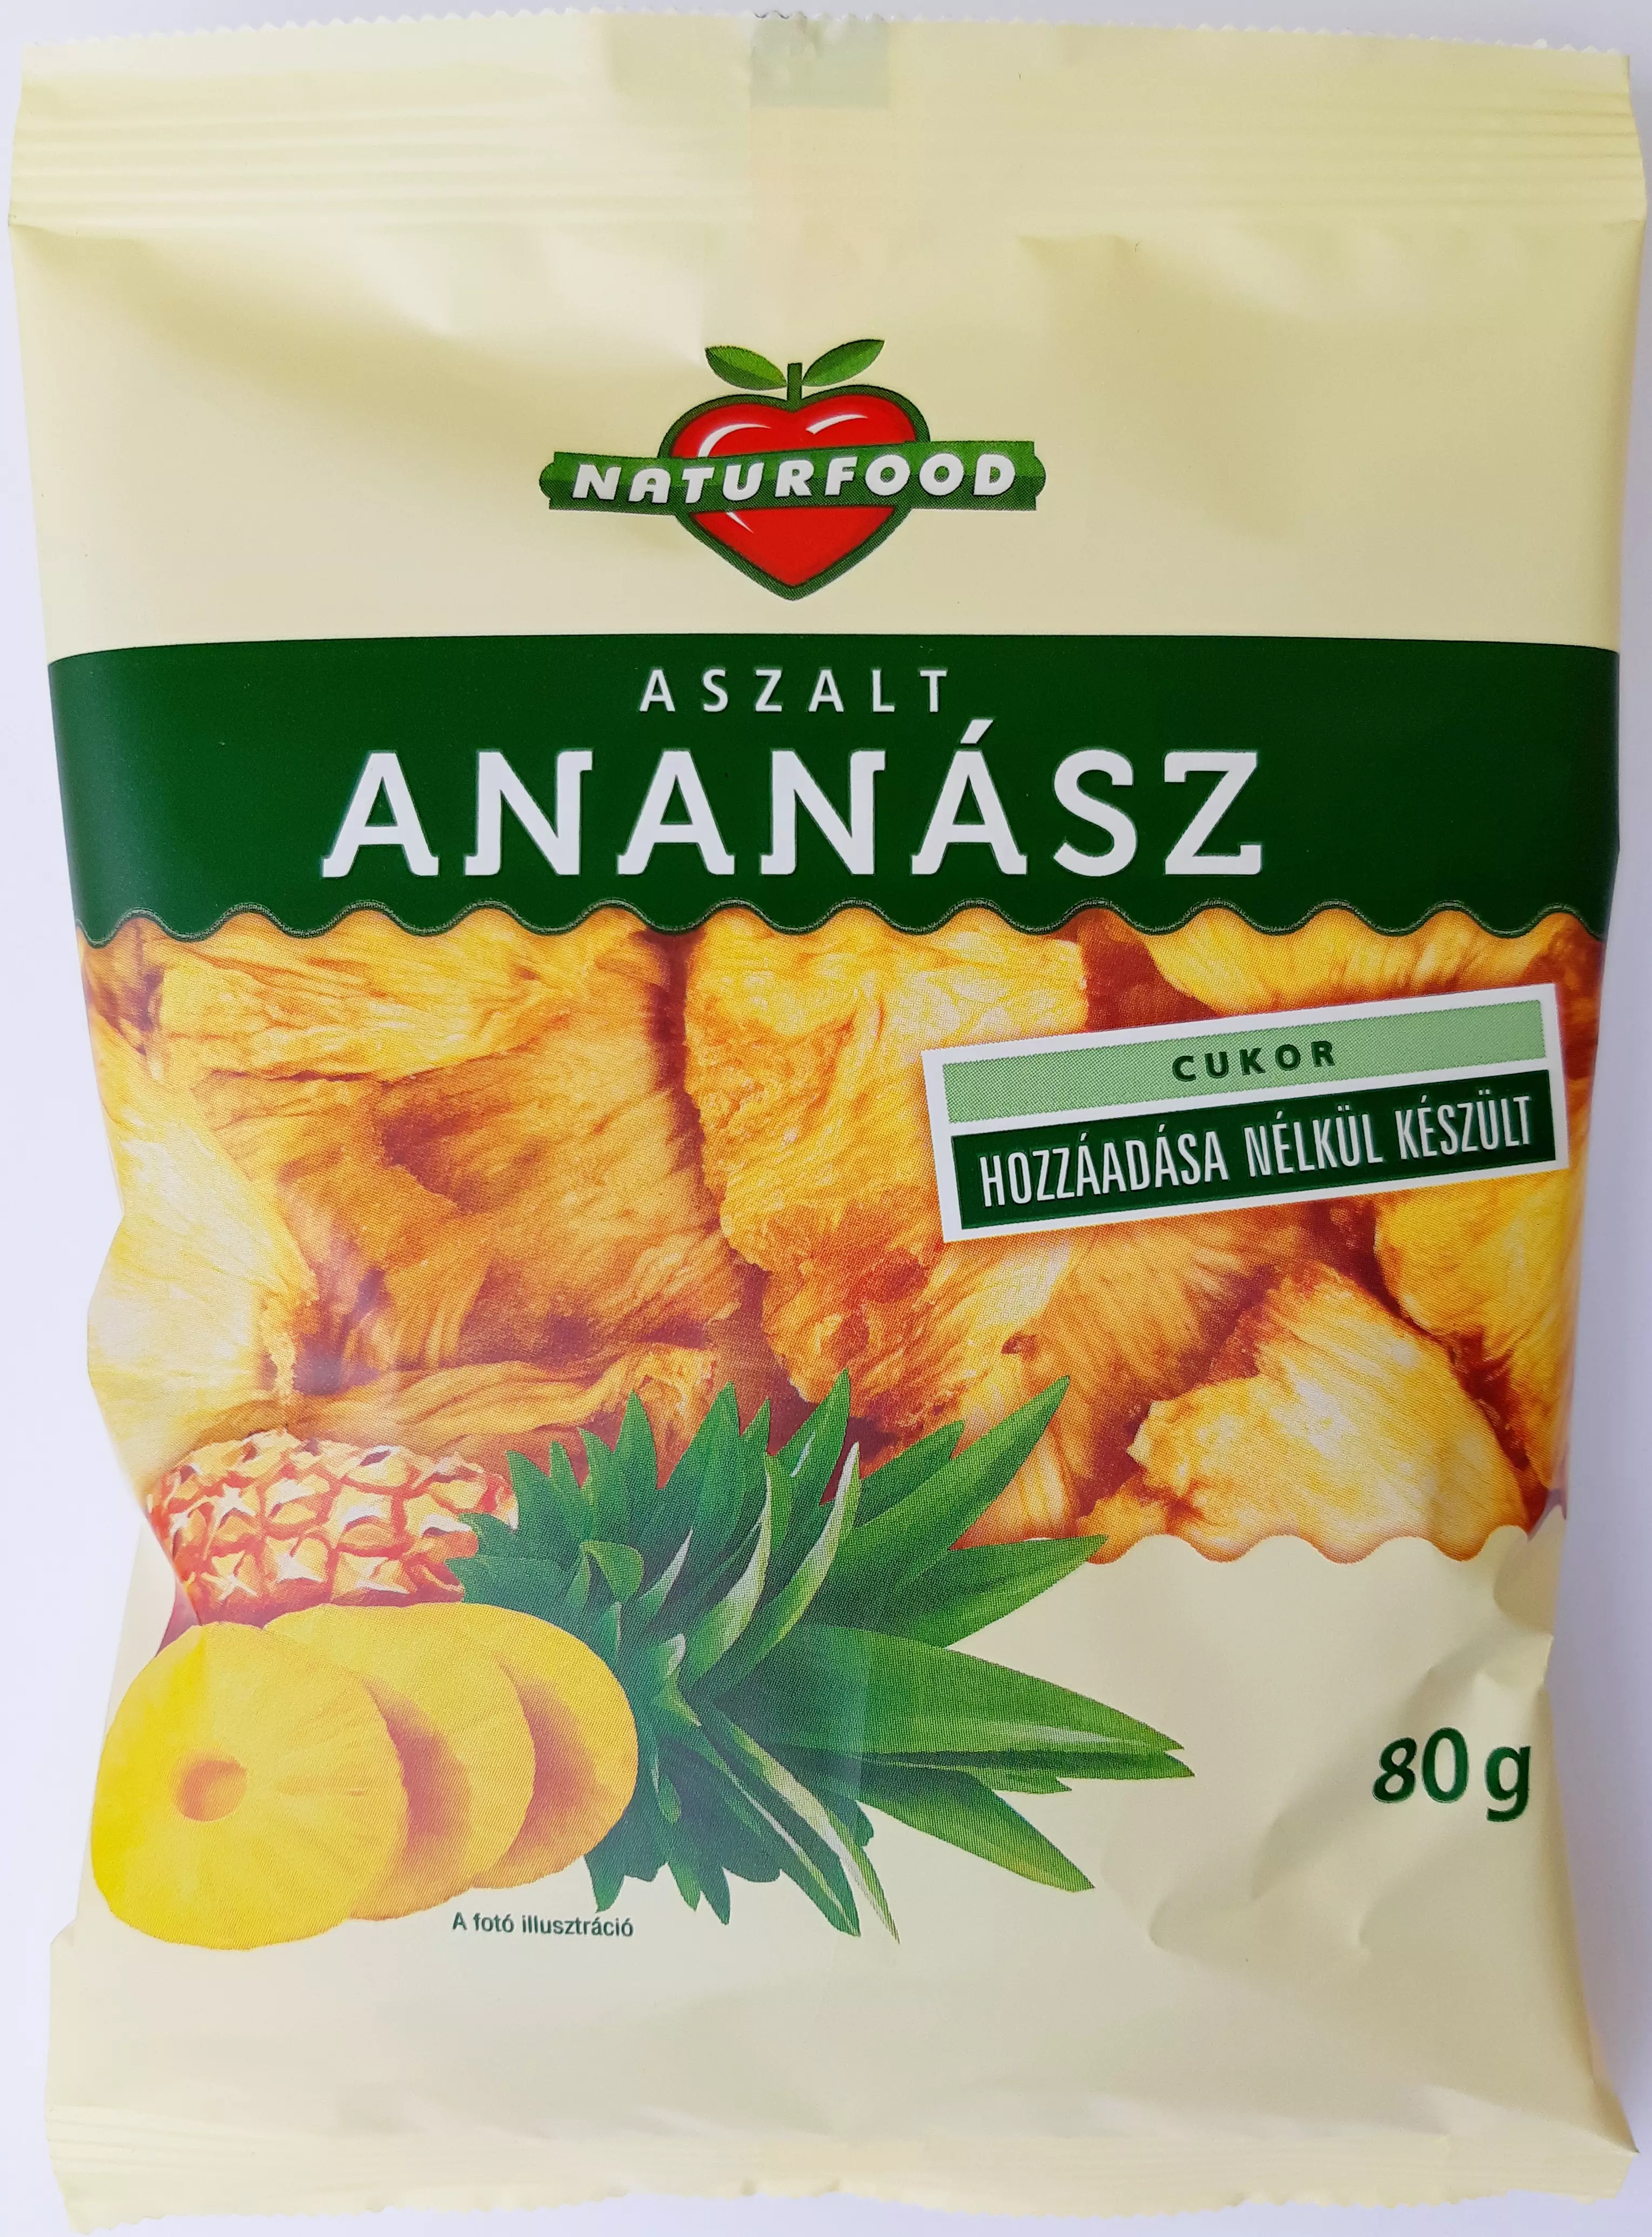 Naturfood aszalt ananász 80 g